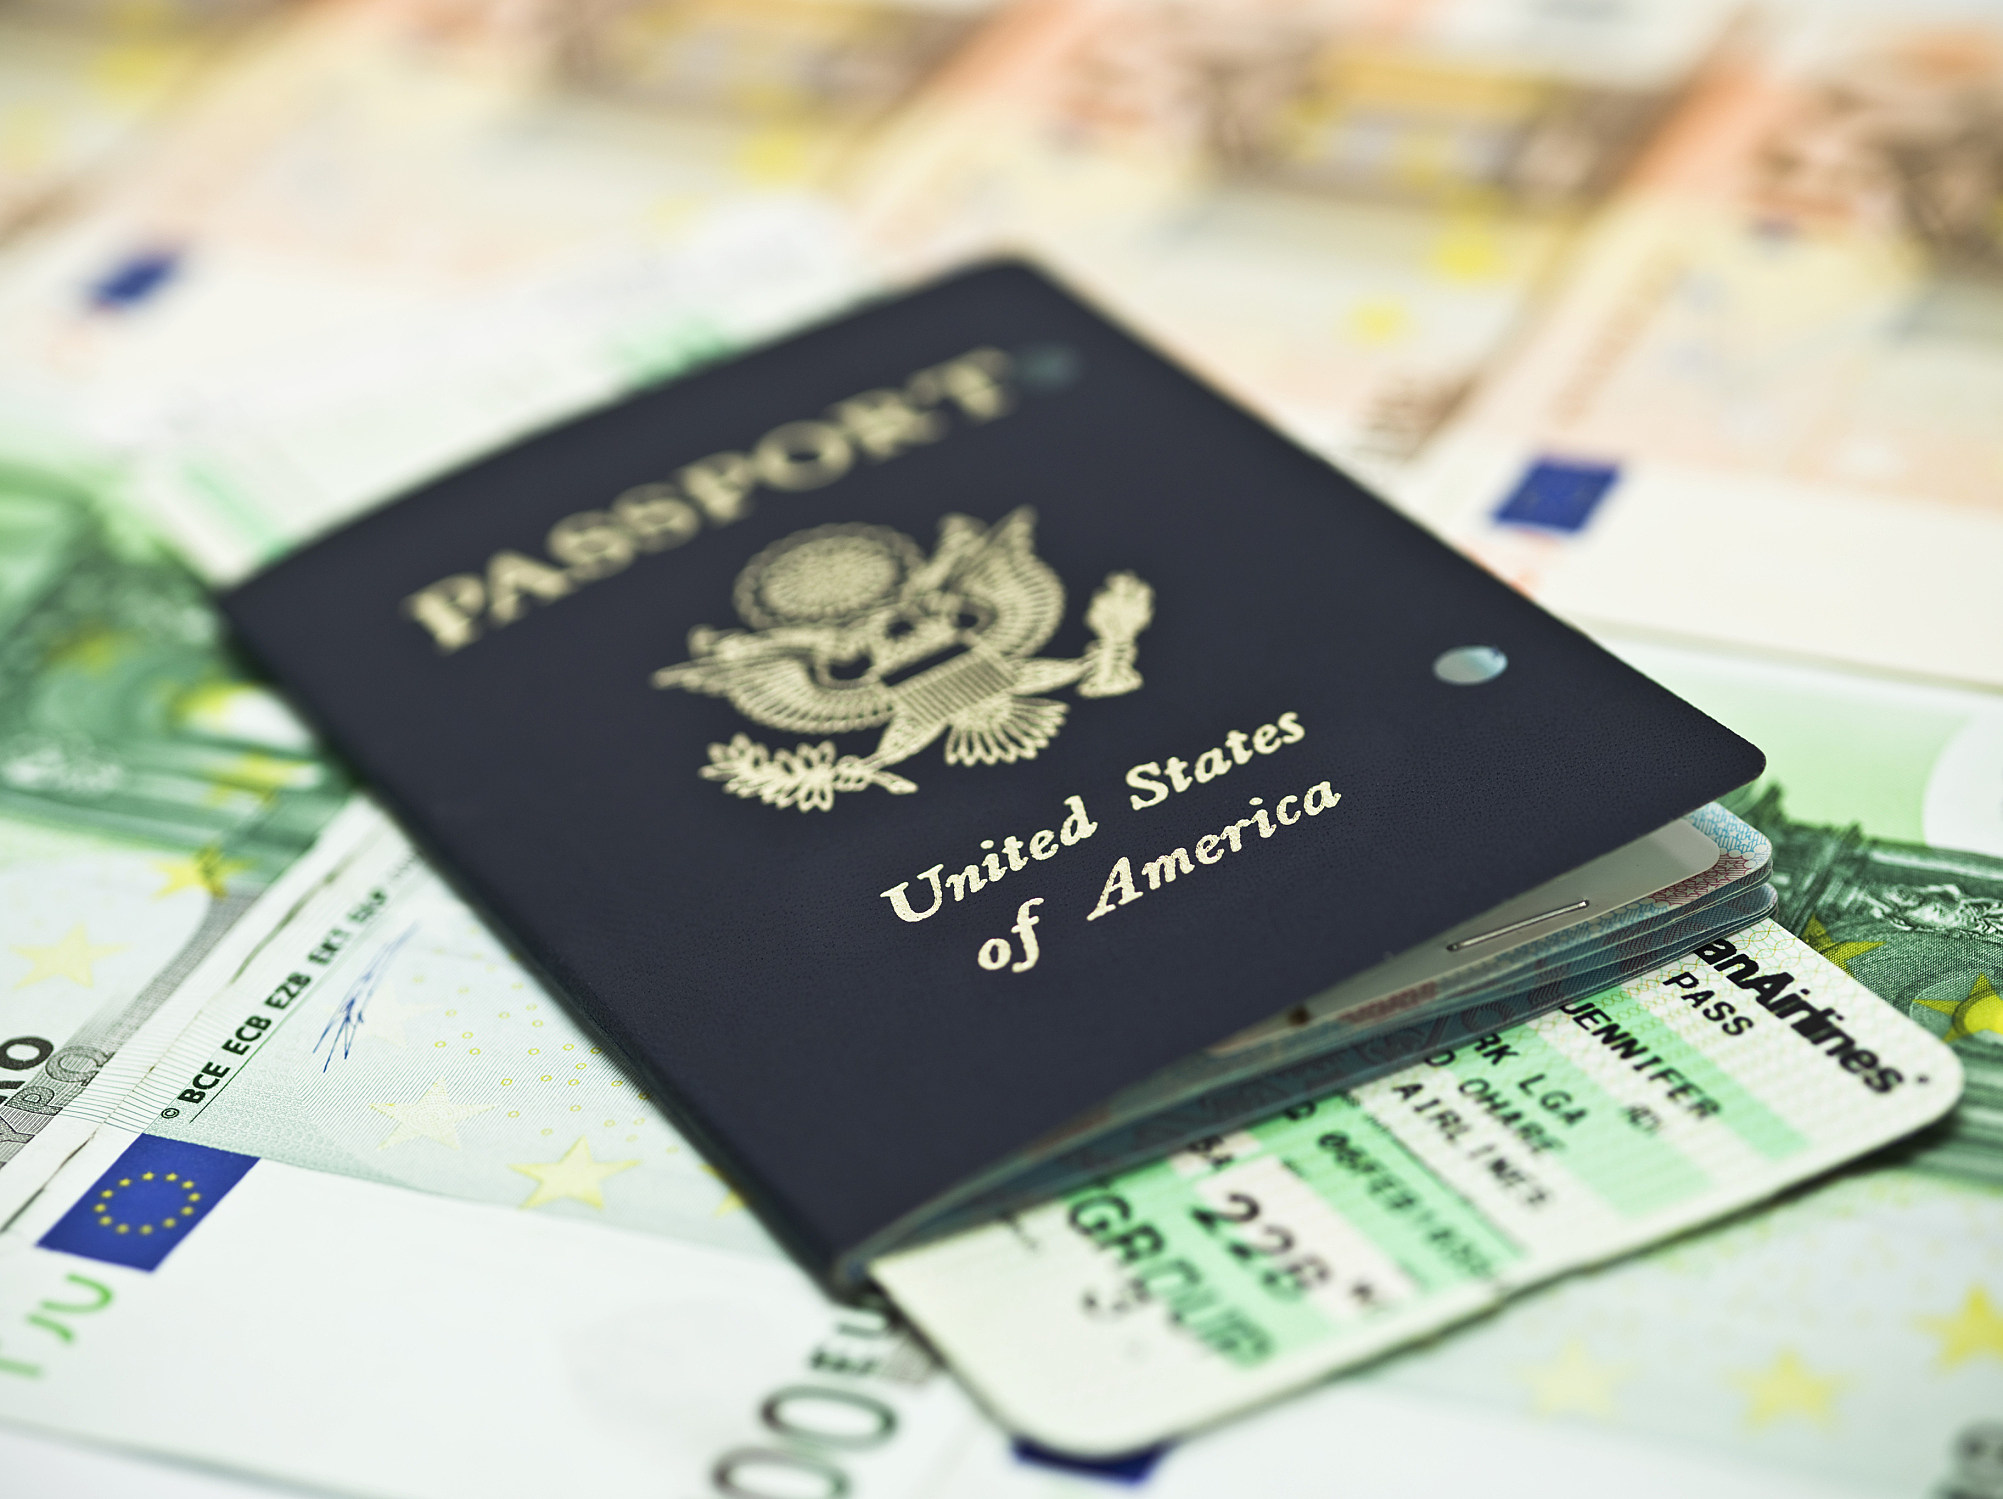 usps passportscheduler